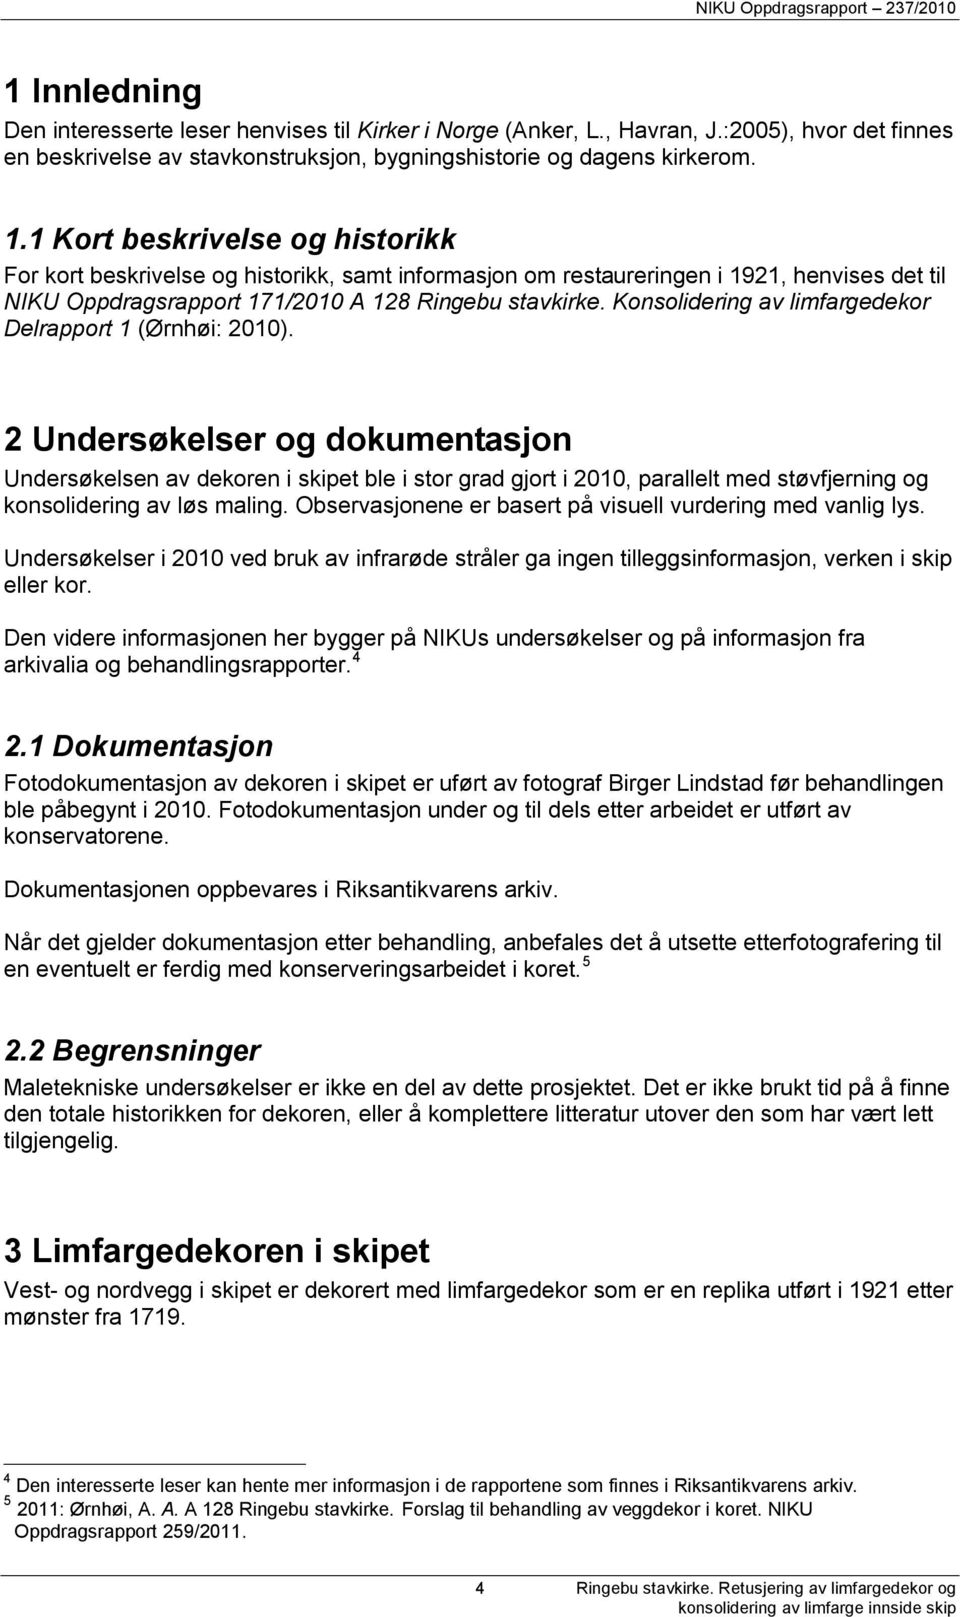 Konsolidering av limfargedekor Delrapport 1 (Ørnhøi: 2010).